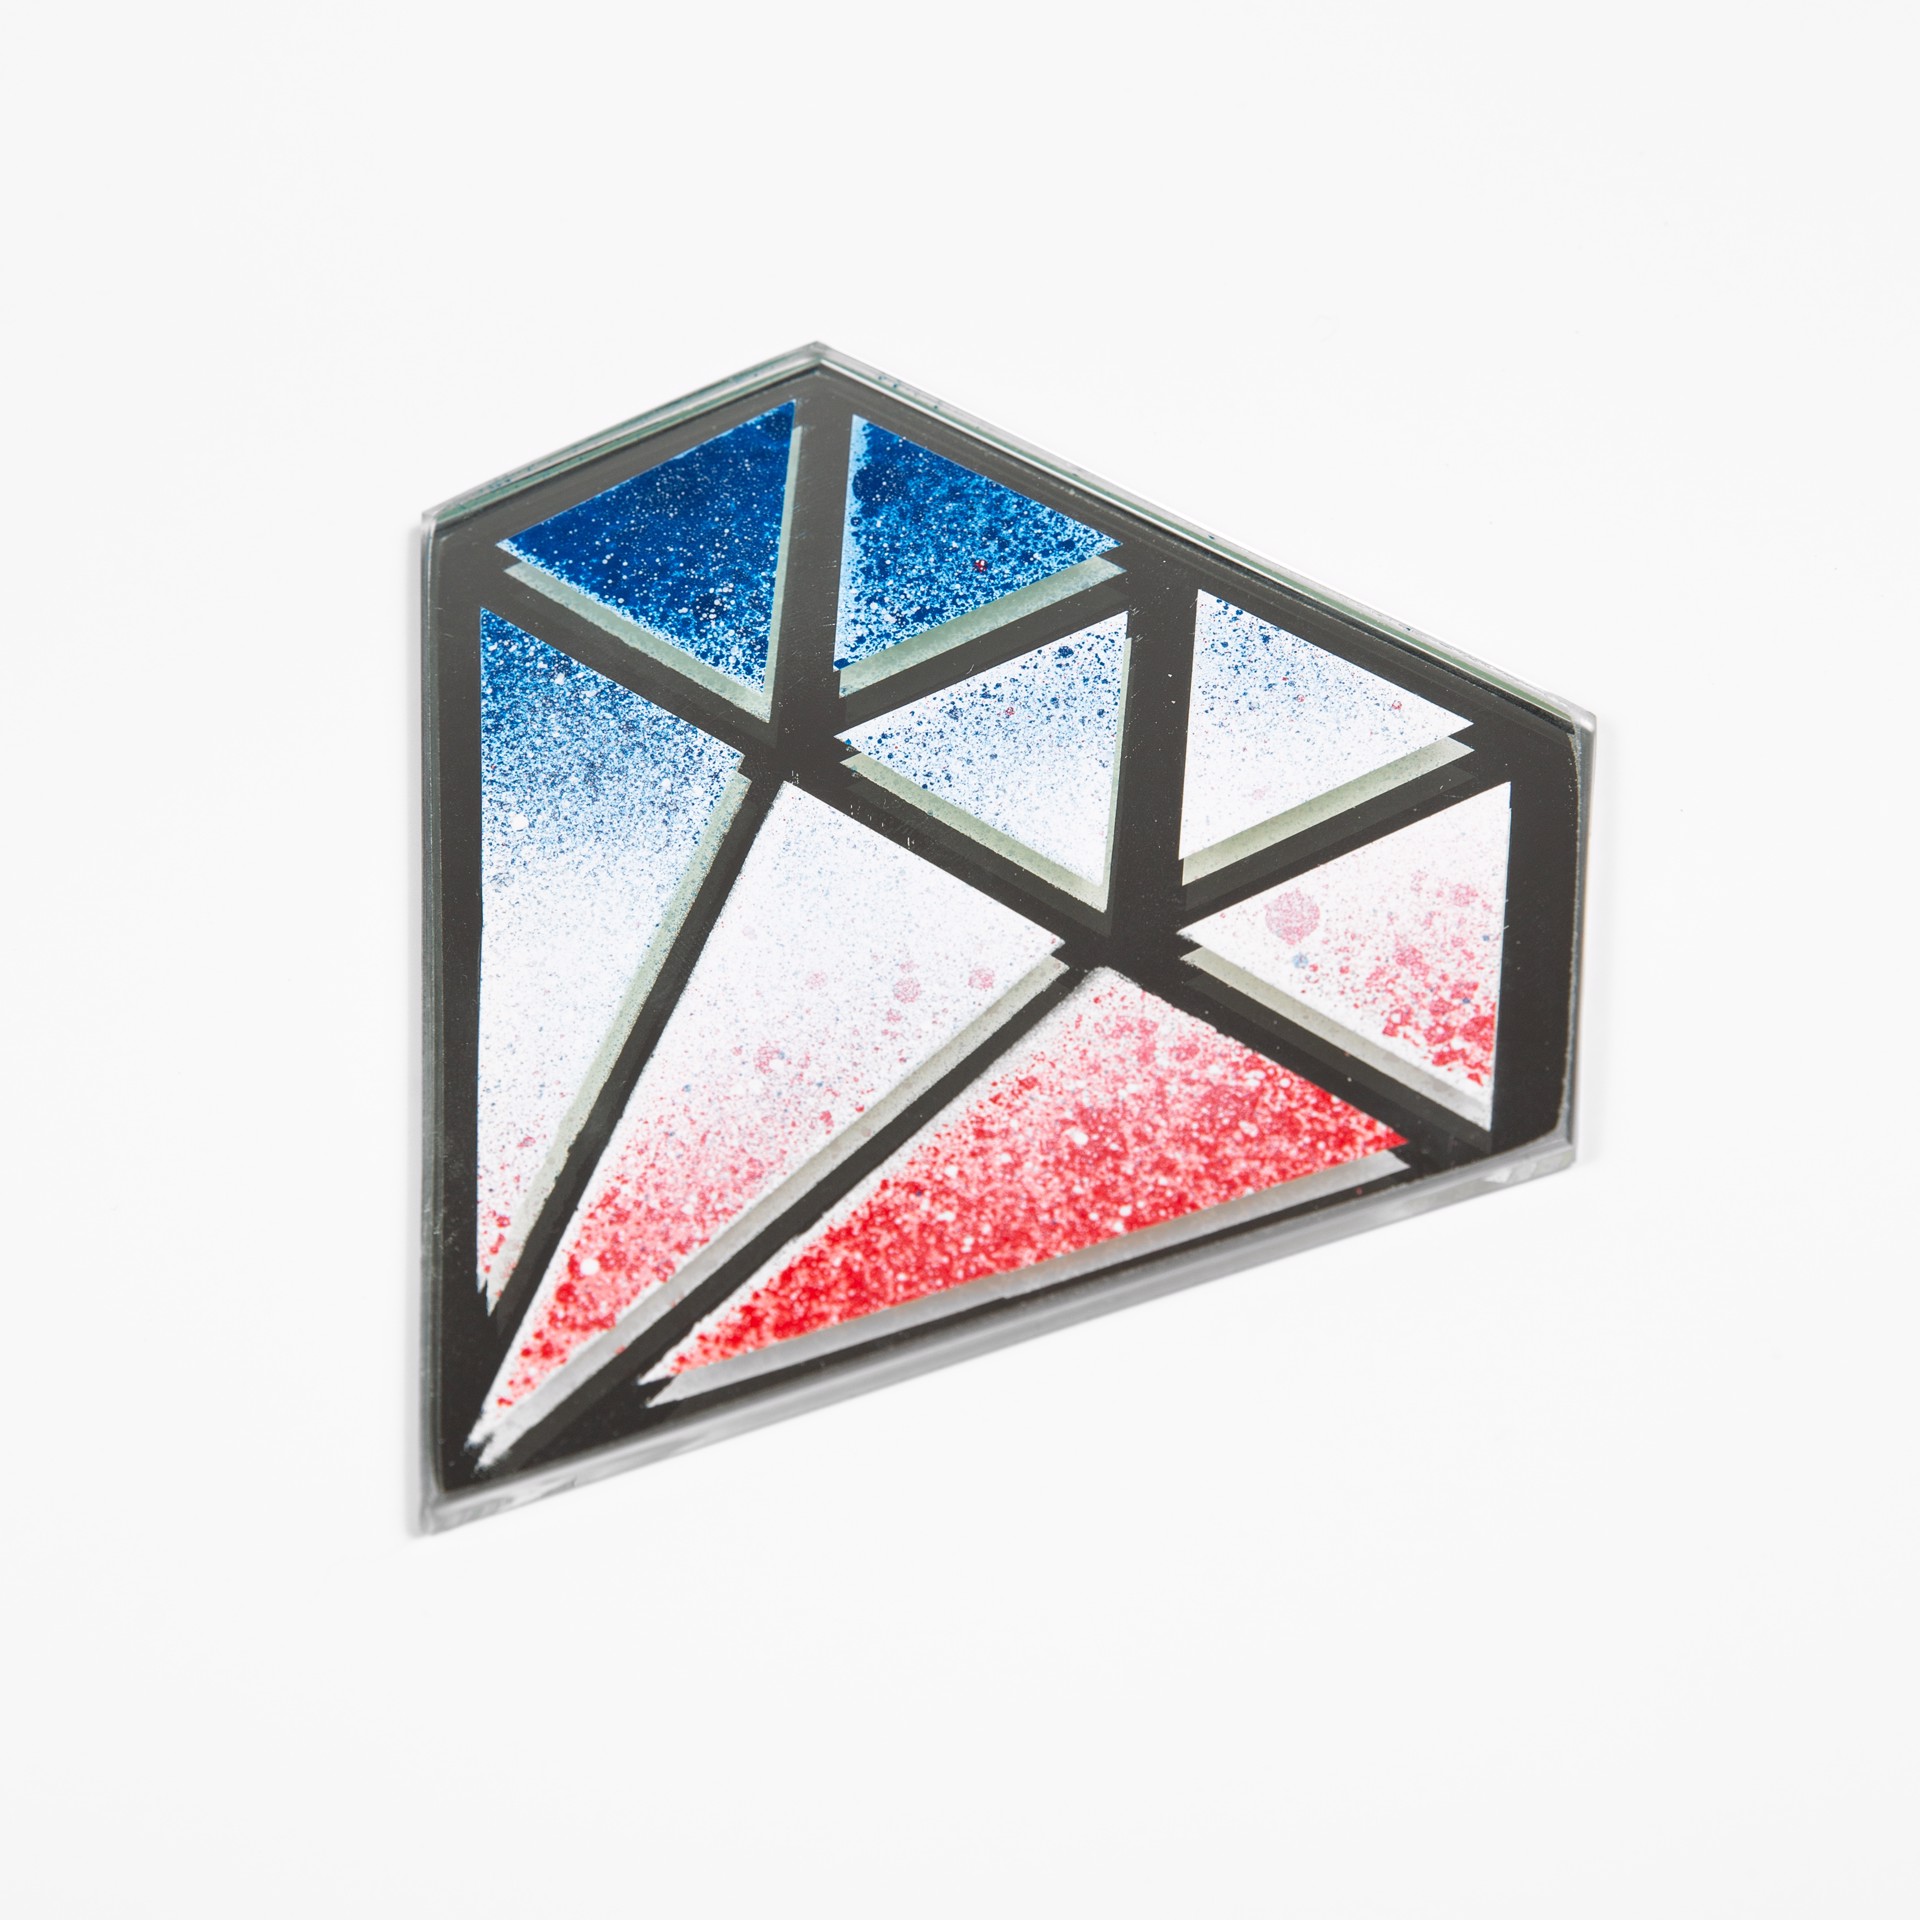 Tricoloured Diamond by Le Diamentaire